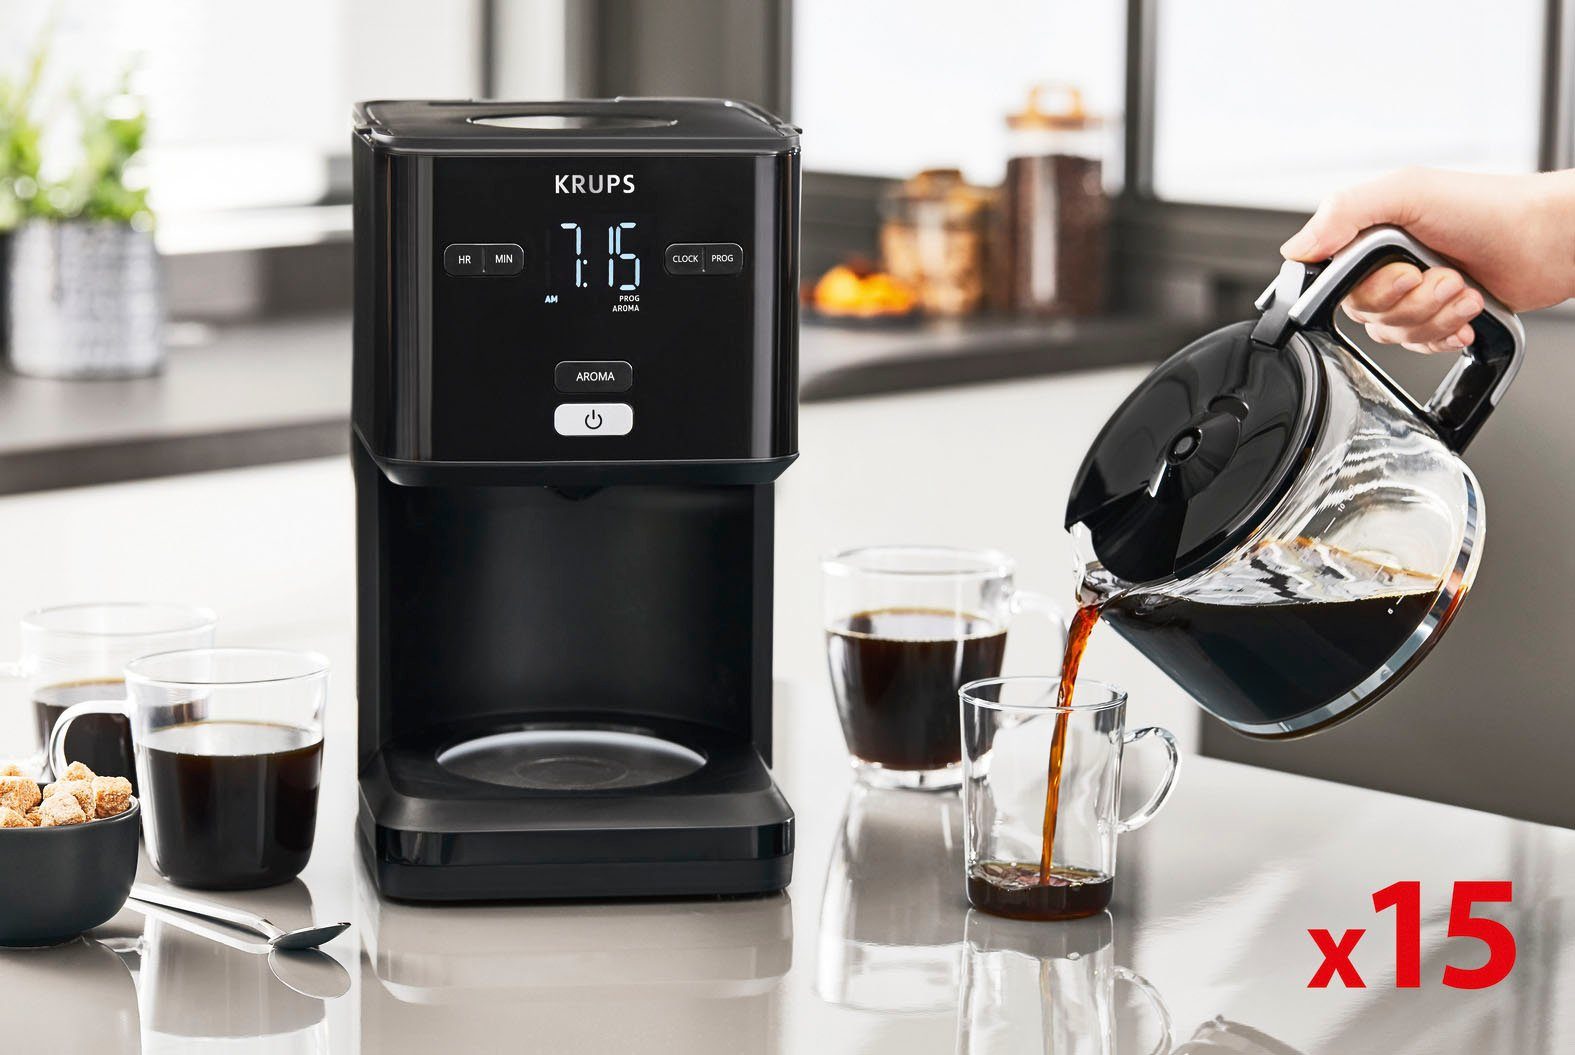 nach 30 24-Std-Timer, Light, Minuten Abschaltung automatische Filterkaffeemaschine 1,25l Smart'n Kaffeekanne, Krups KM6008